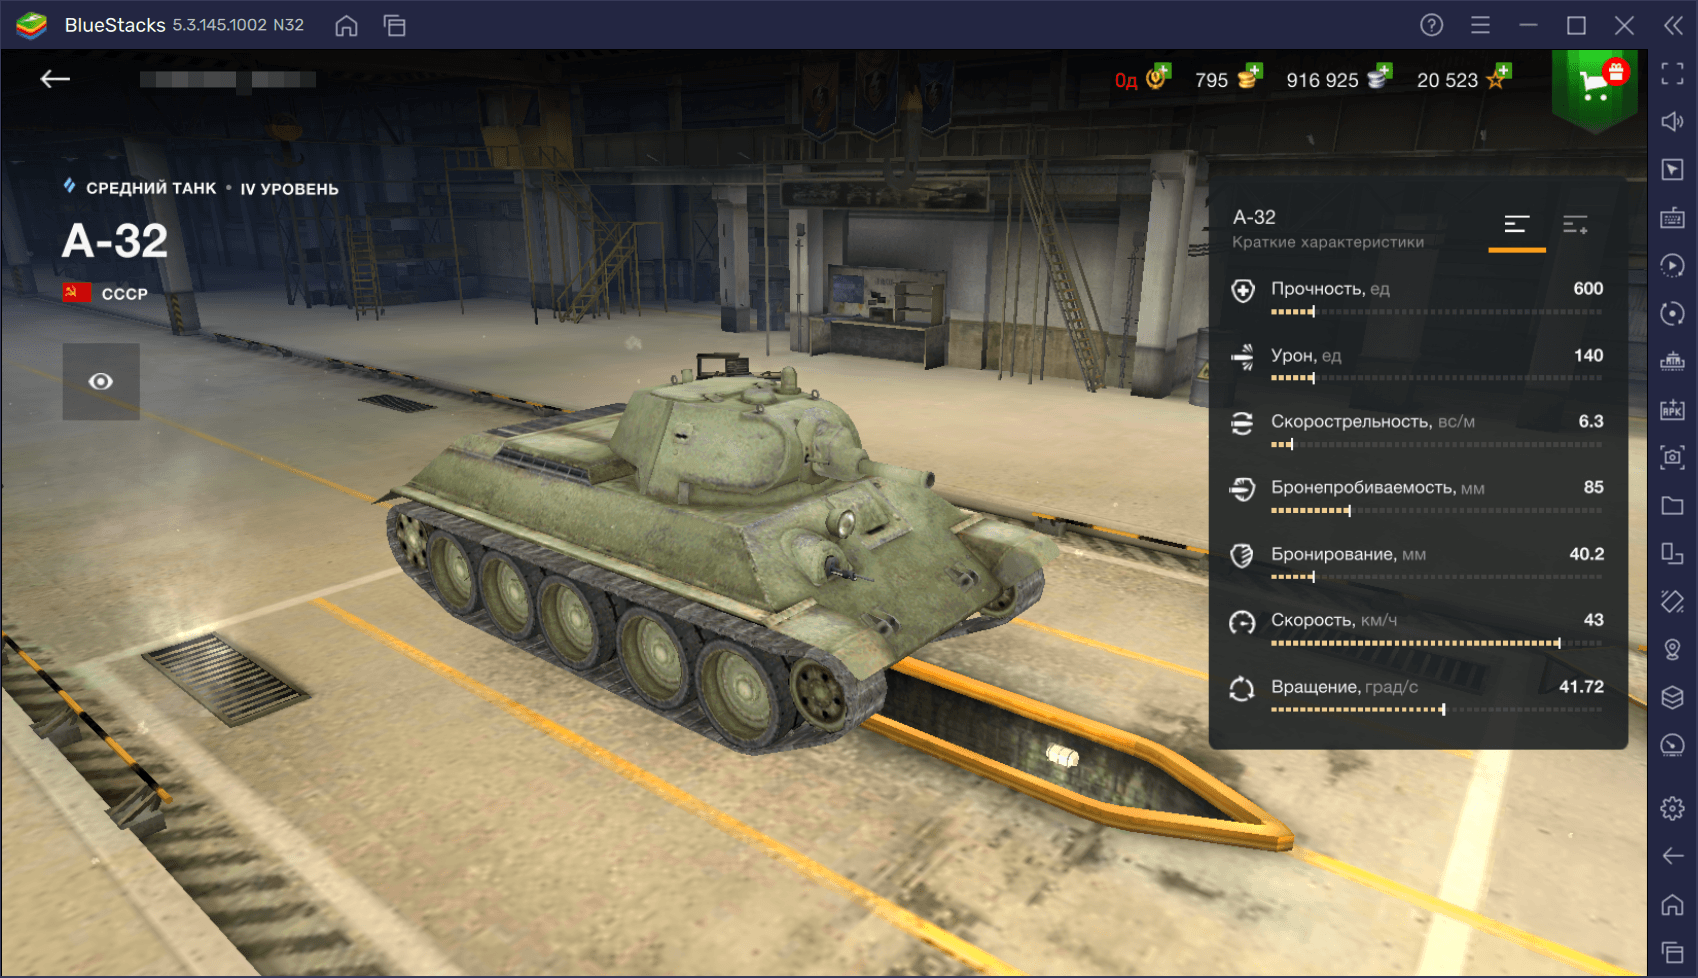 Акционный средний танк А-32 в World of Tanks Blitz. Обзор характеристик, параметров, преимуществ и тактик игры